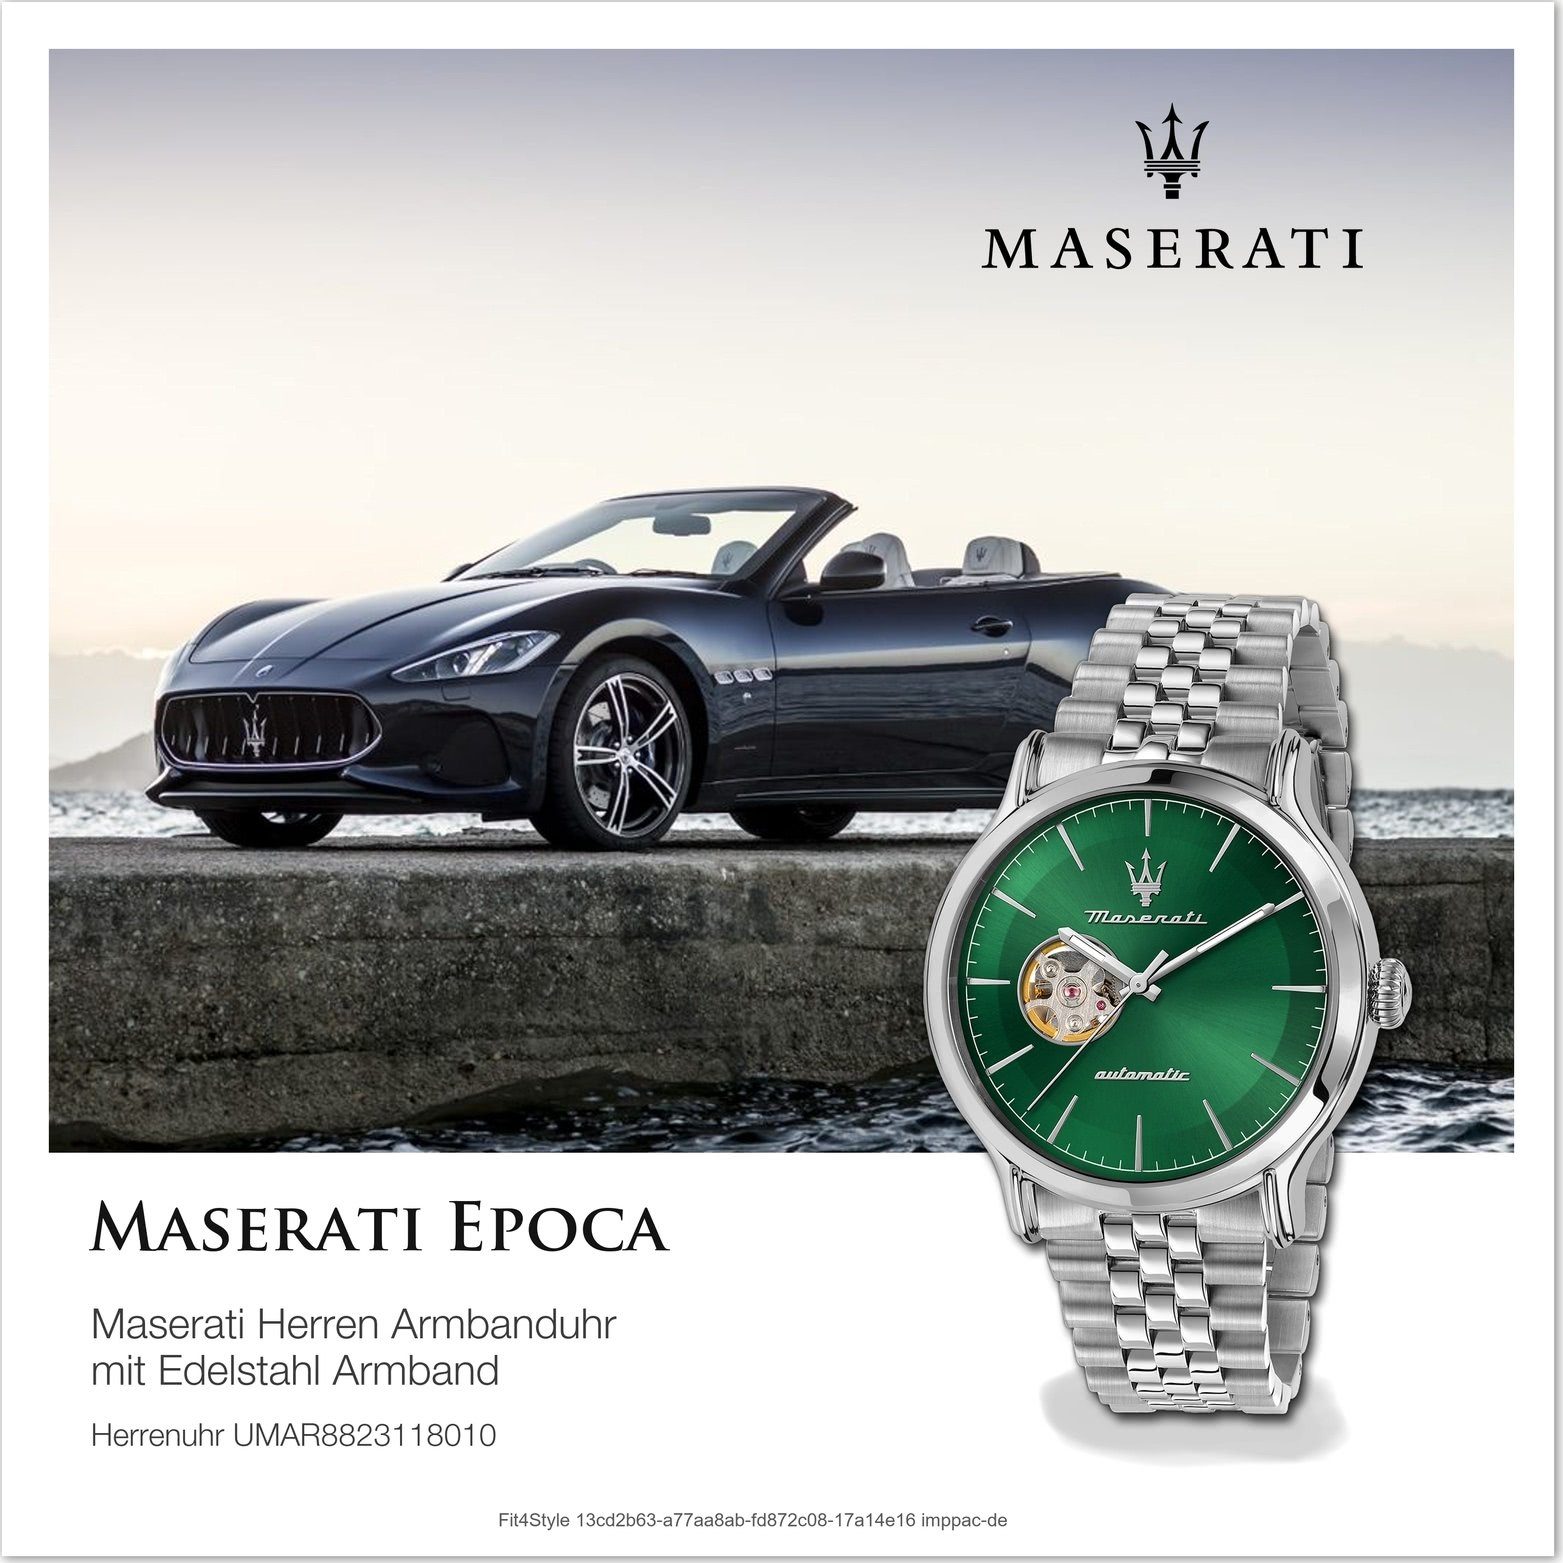 MASERATI Quarzuhr Maserati Herren Armbanduhr Epoca, Herrenuhr  Edelstahlarmband, rundes Gehäuse, groß (ca. 42mm) grau, grün